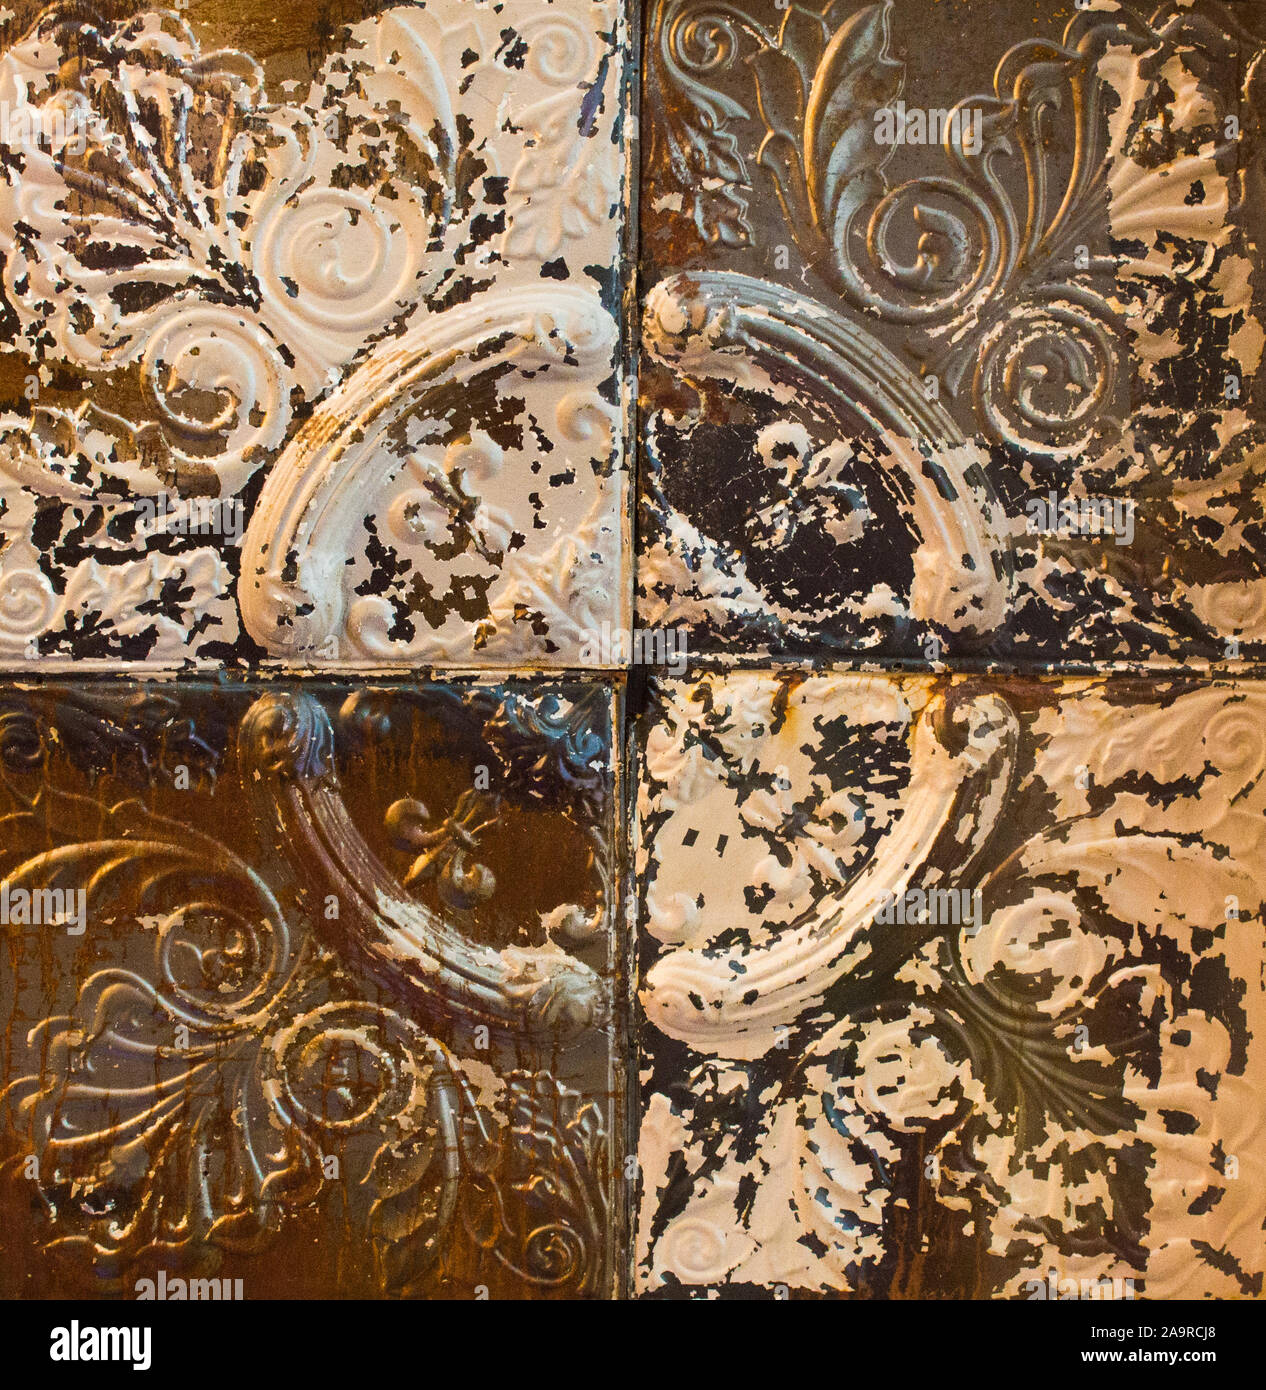 La texture de fond-close up of vintage tin avec des carreaux de plafond design sculpté Banque D'Images